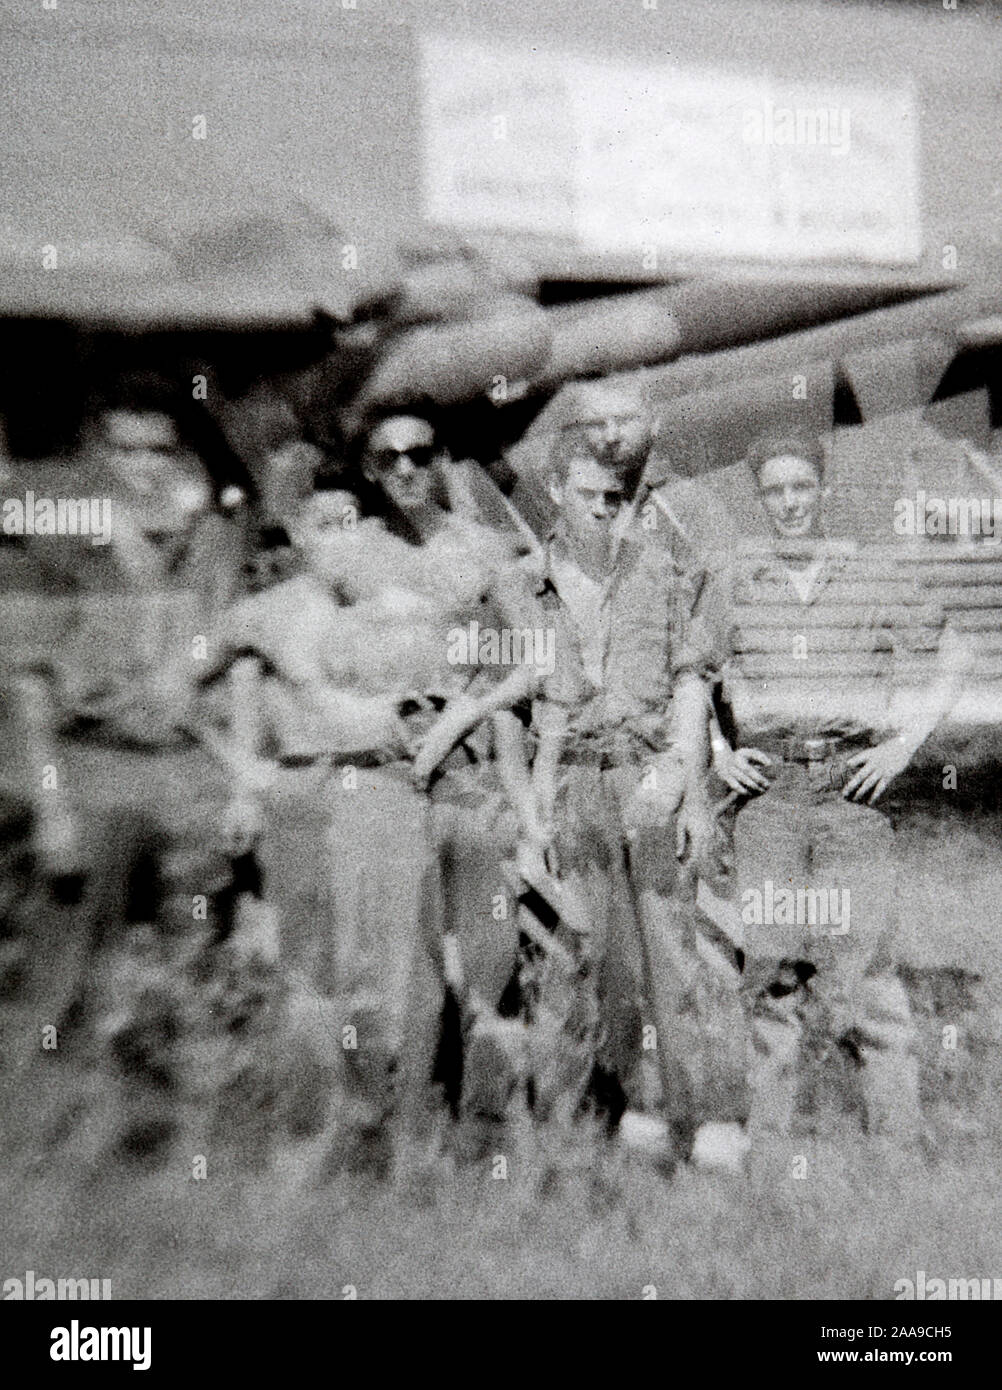 Une unité de l'US Navy est capturé dans une double exposition faite par erreur pendant la Seconde Guerre mondiale photo sur Guam, ca. 1944. Banque D'Images